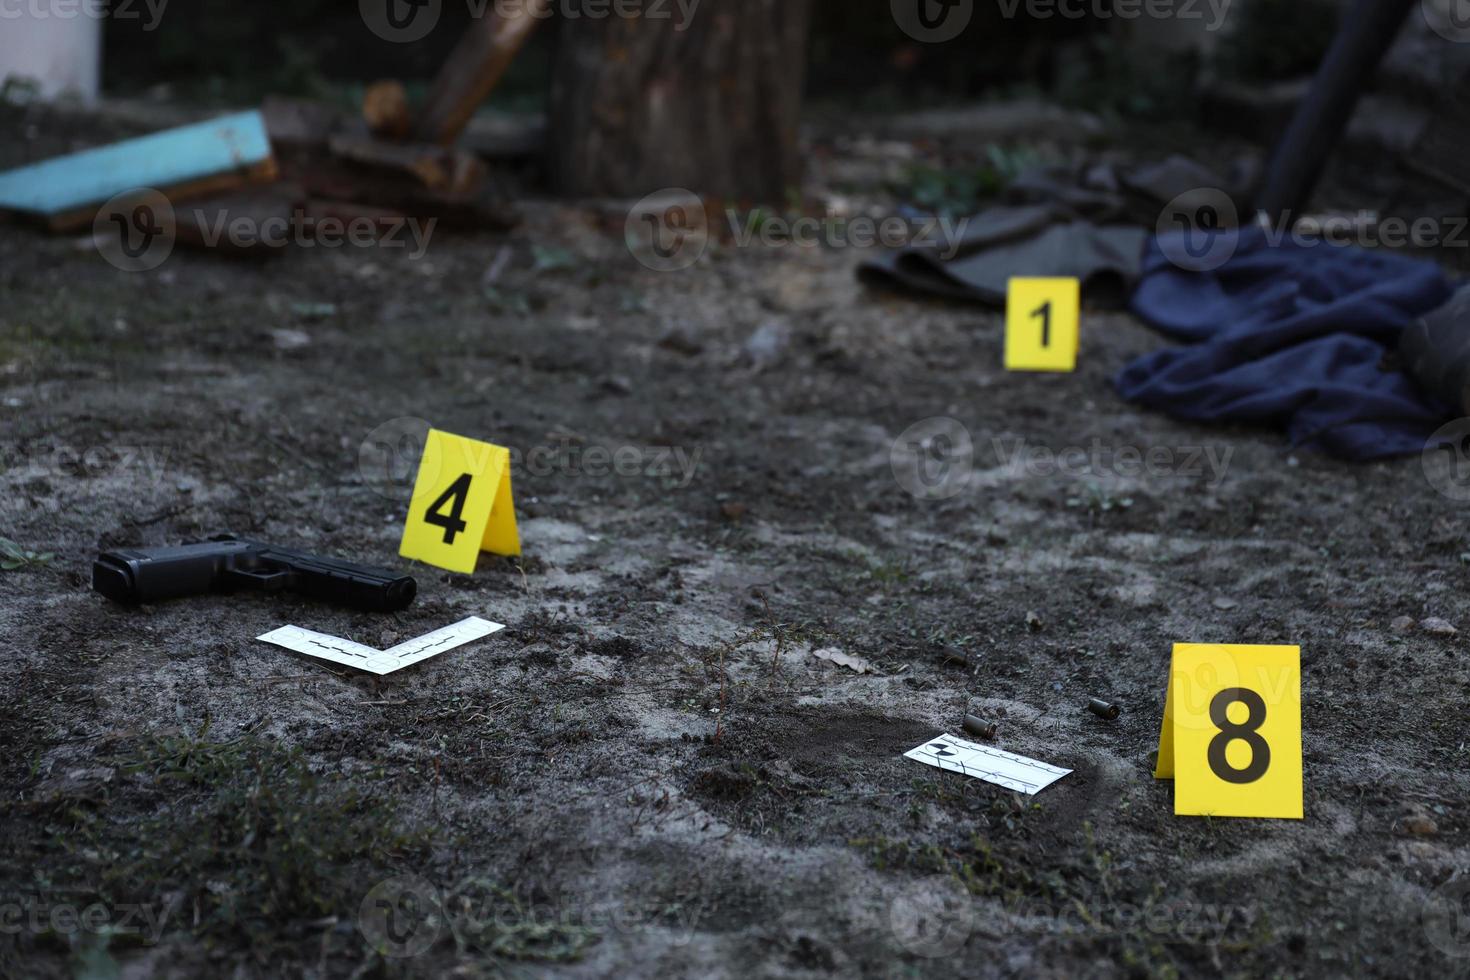 bevis med gul csi markör för bevis numrering på de bosatt bakgård i kväll. brottslighet scen undersökning begrepp foto